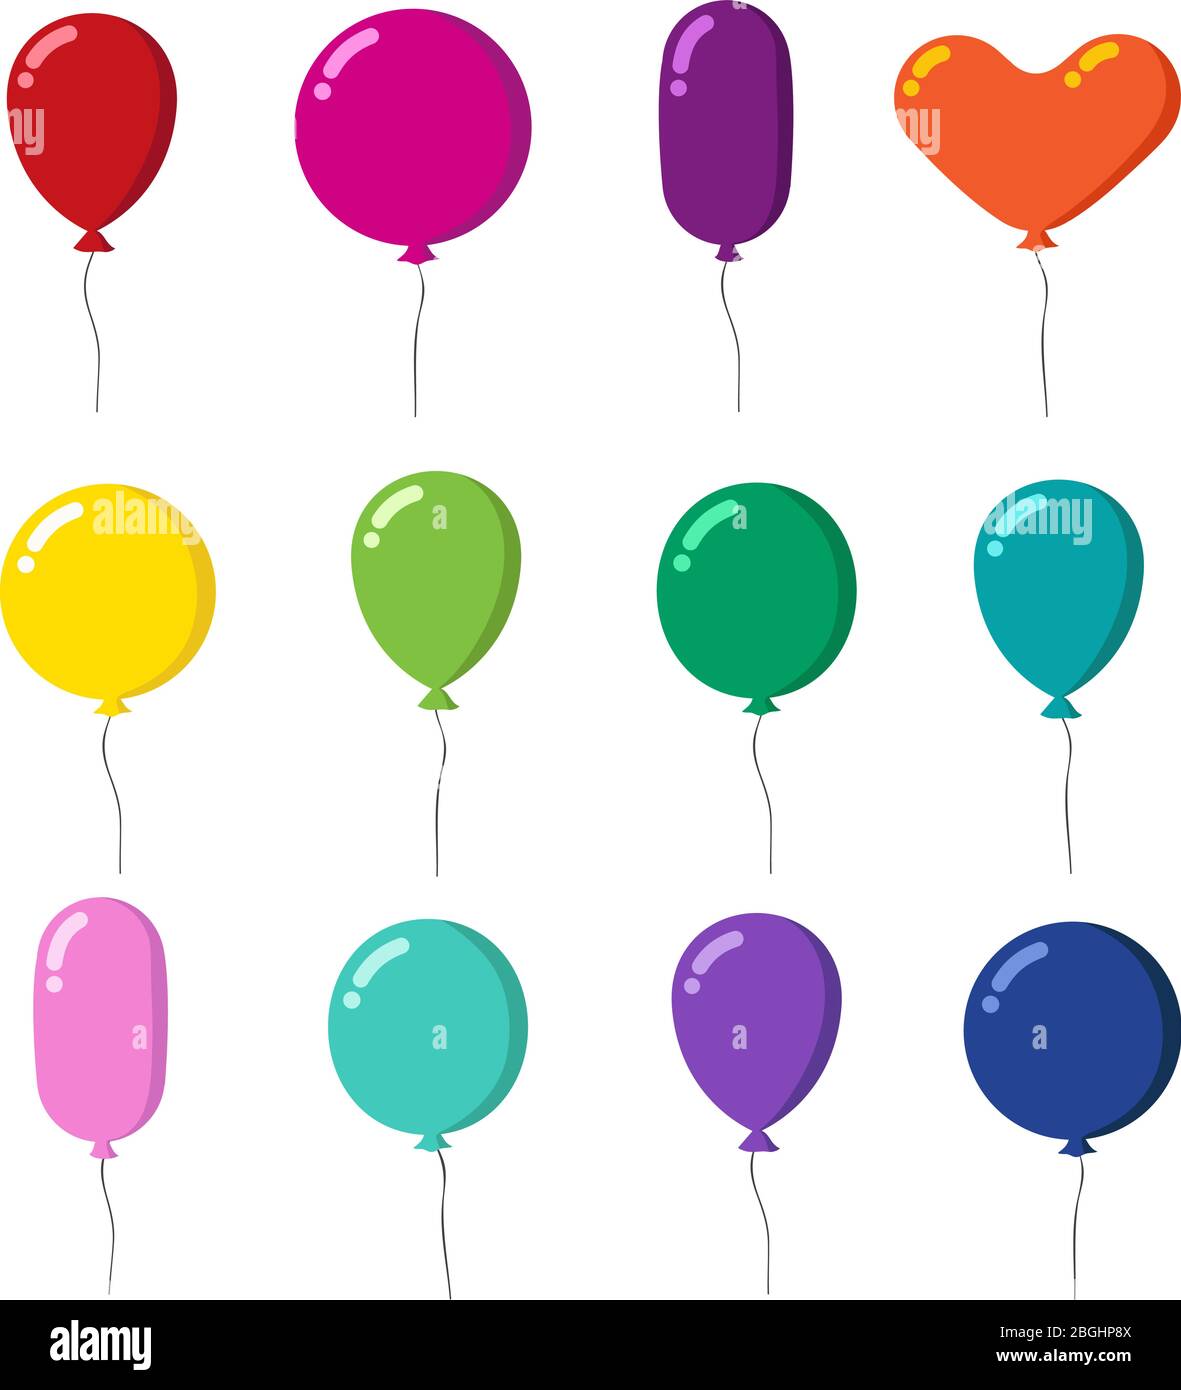 Ballons de dessin animé en caoutchouc couleur avec vecteur de chaîne isolé sur fond blanc. Illustration ballon coloré avec hélium pour cadeau de vacances Illustration de Vecteur